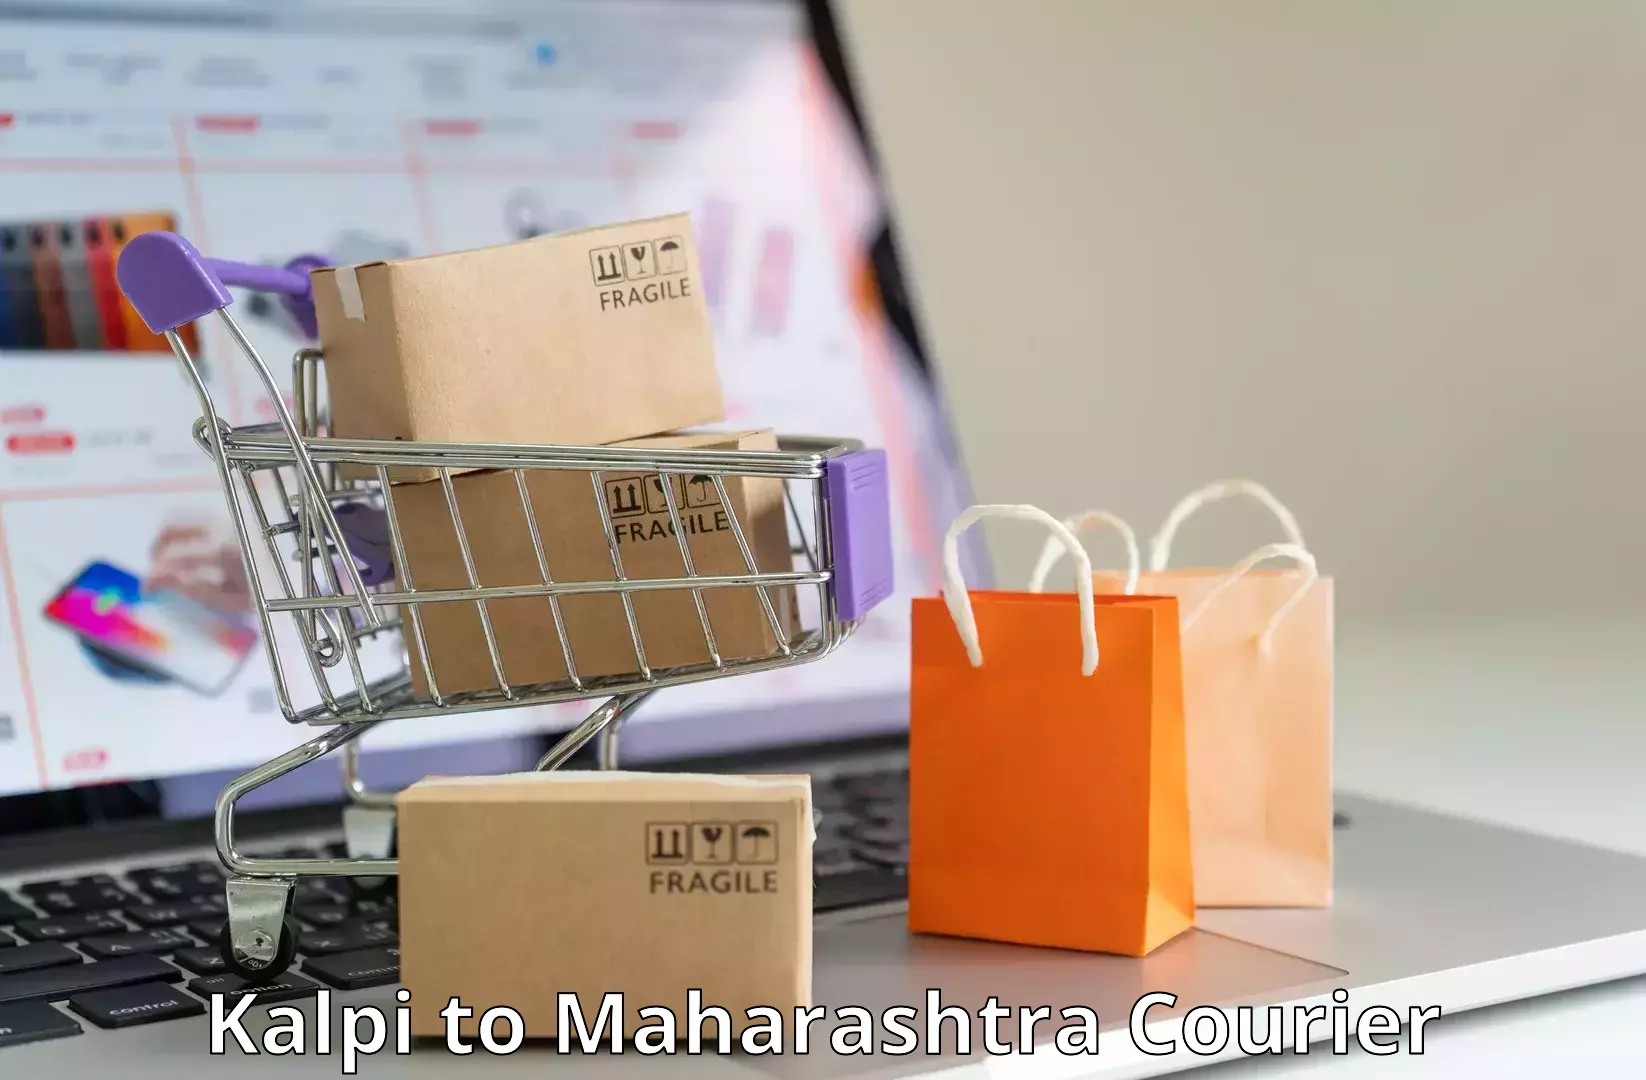 Local delivery service Kalpi to Maharashtra